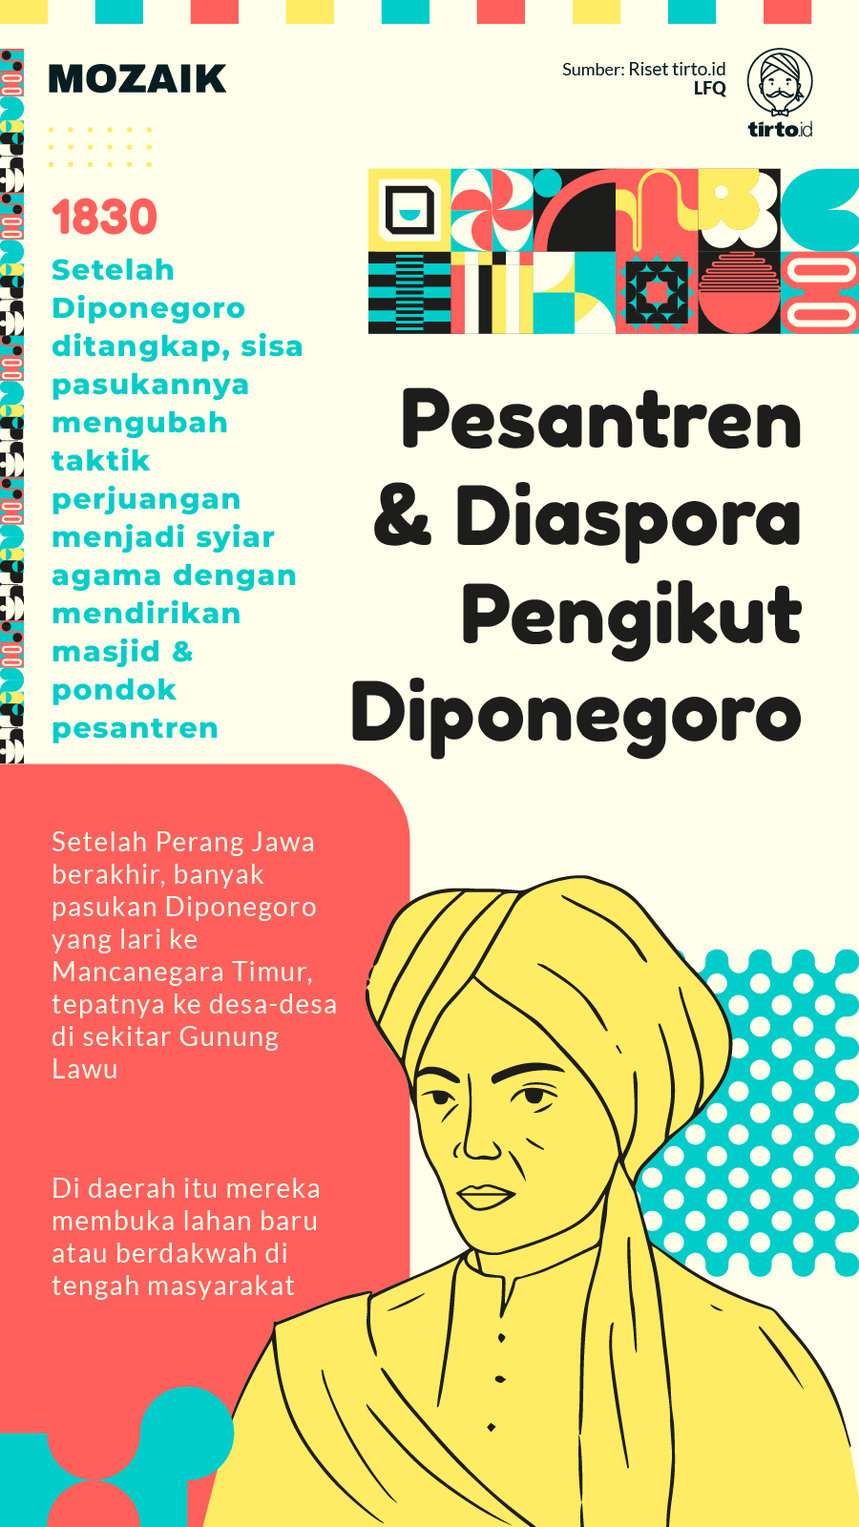 Infografik Mozaik Pesantren Diponegoro